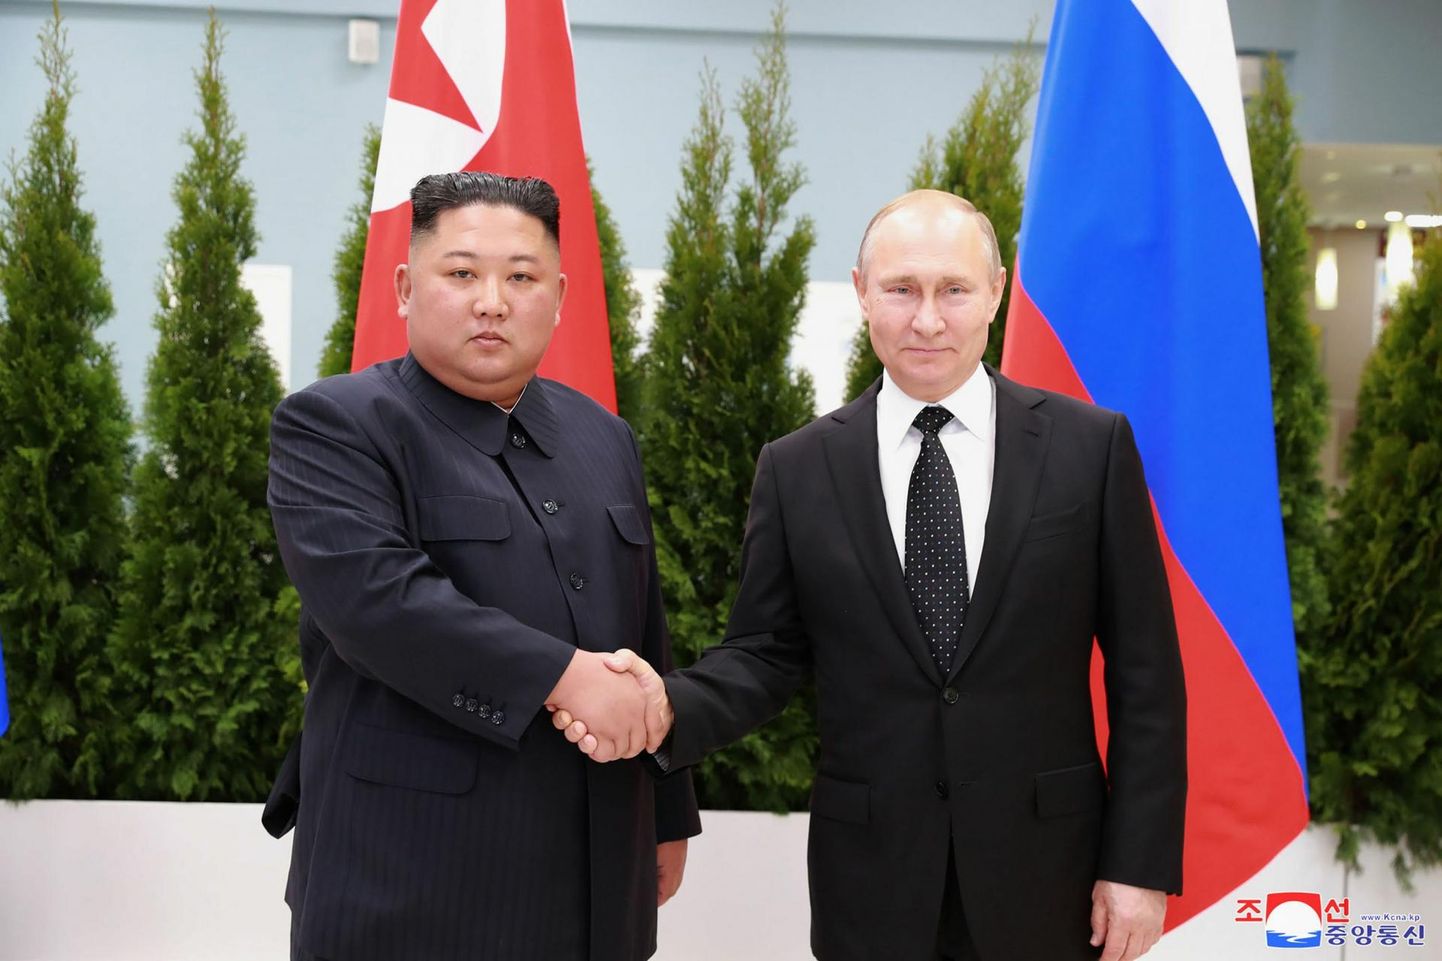 Põhja-Korea liider Kim Jong-un ja Venemaa president Vladimir Putin Venemaal Vladivostokis toimunud kohtumisel 2019. aastal.